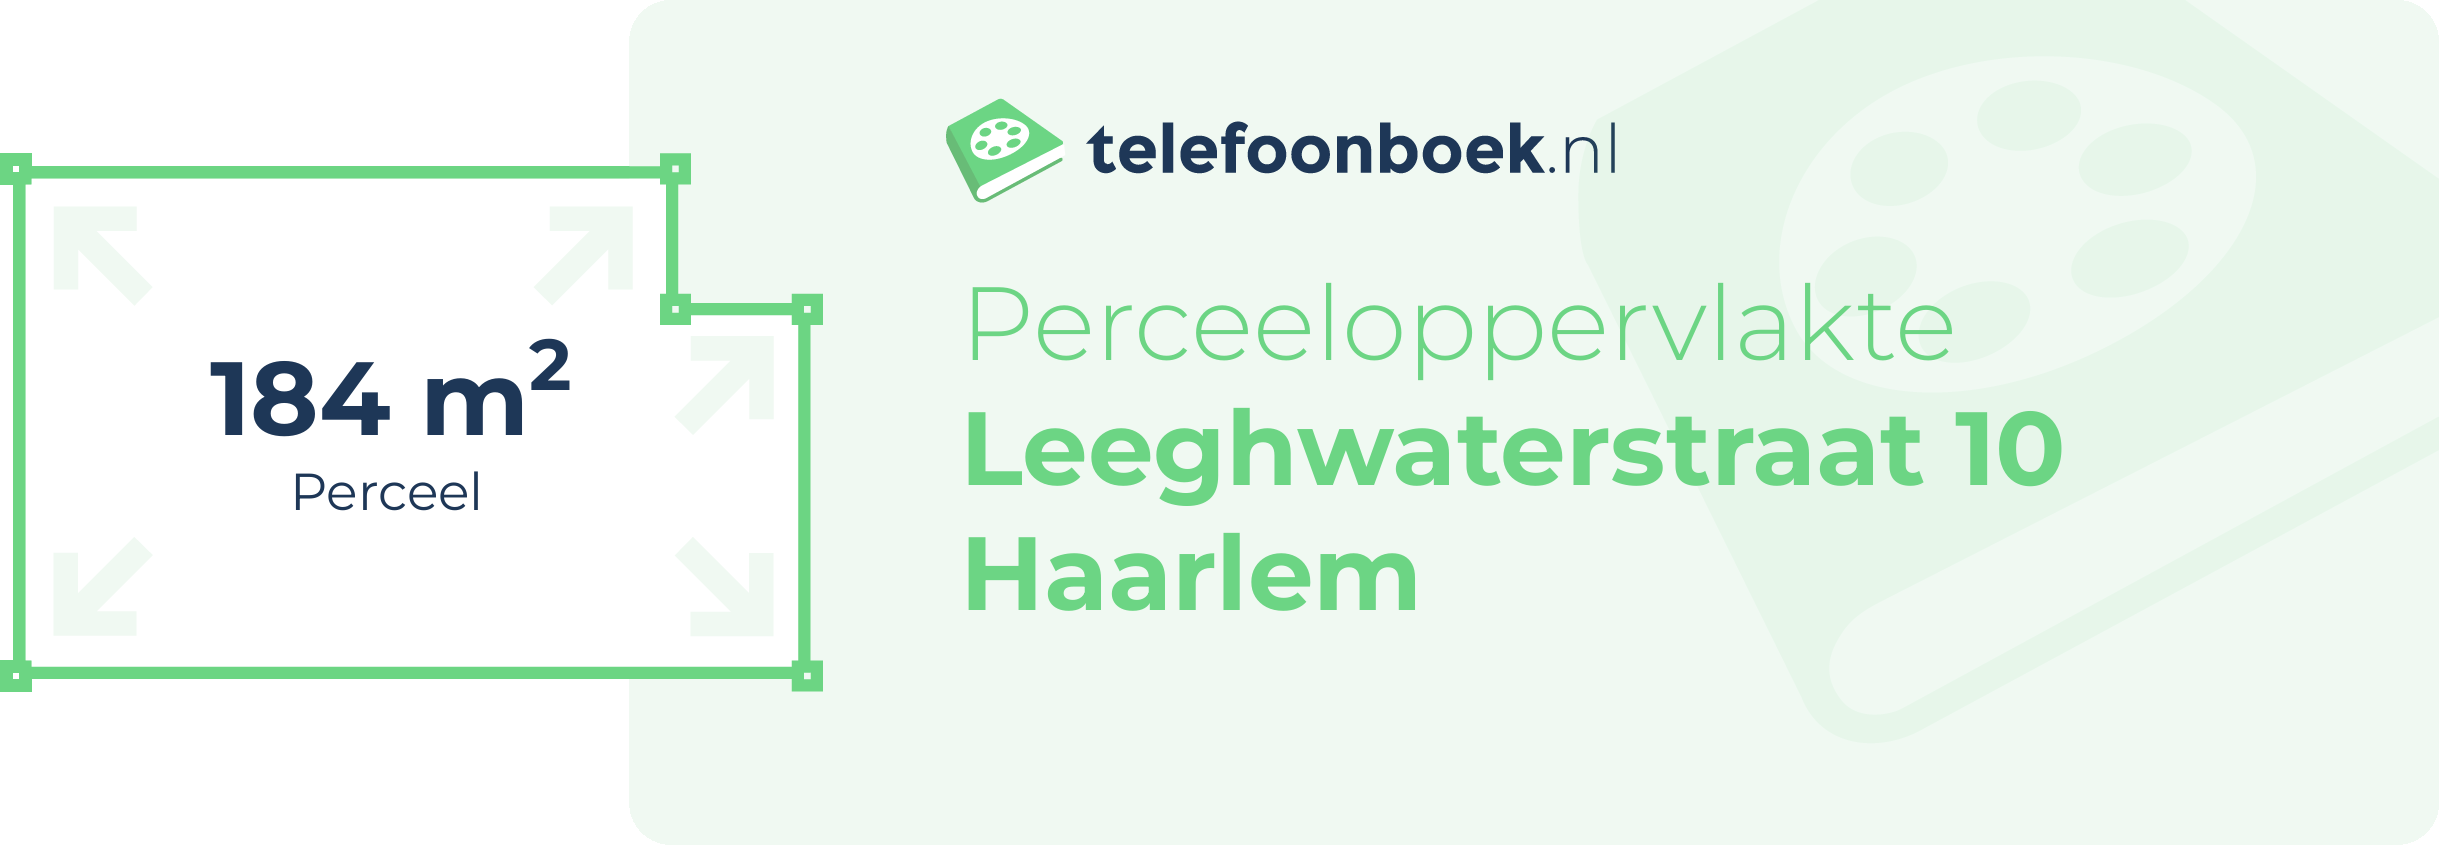 Perceeloppervlakte Leeghwaterstraat 10 Haarlem